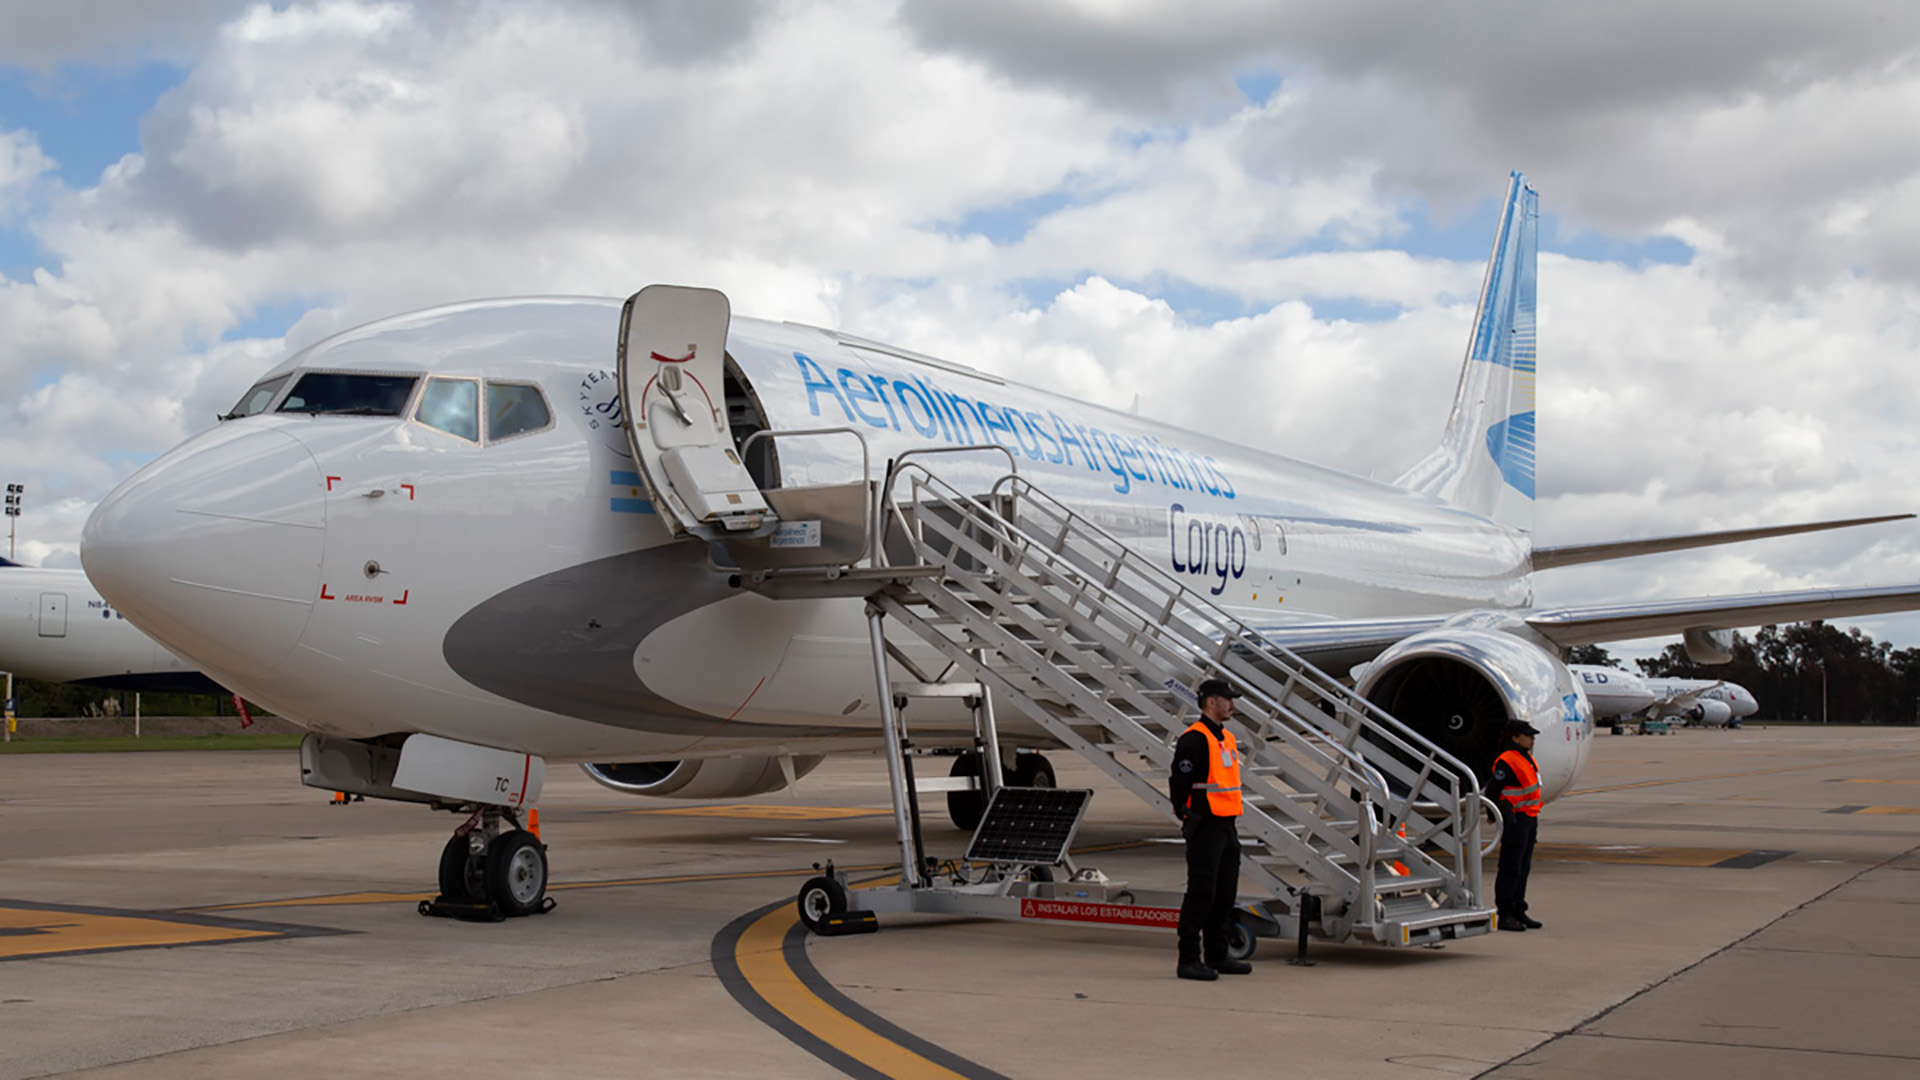 Transporte y logística: se presentó un Boeing 737-800 destinado exclusivamente al transporte de cargas en todo el país